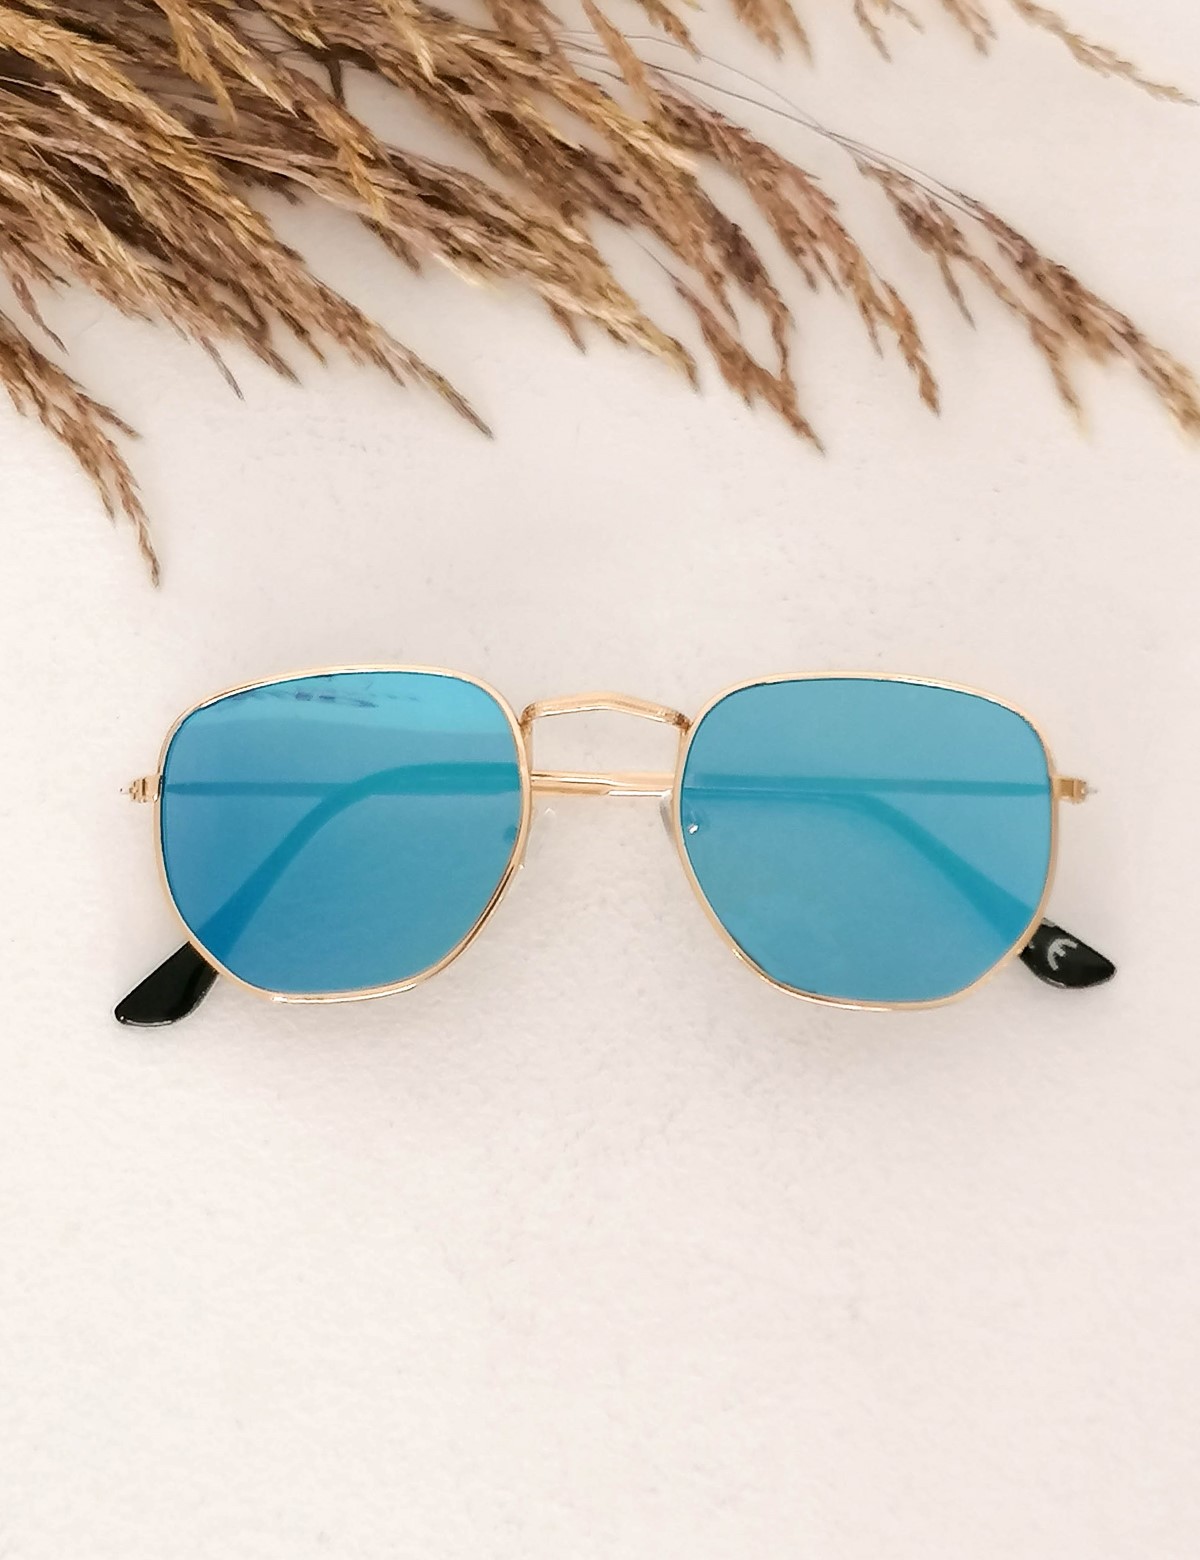 Γυναικεία μπλε πολύγωνα γυαλιά ηλίου καθρέπτης με χρυσό σκελετό Luxury LS3065